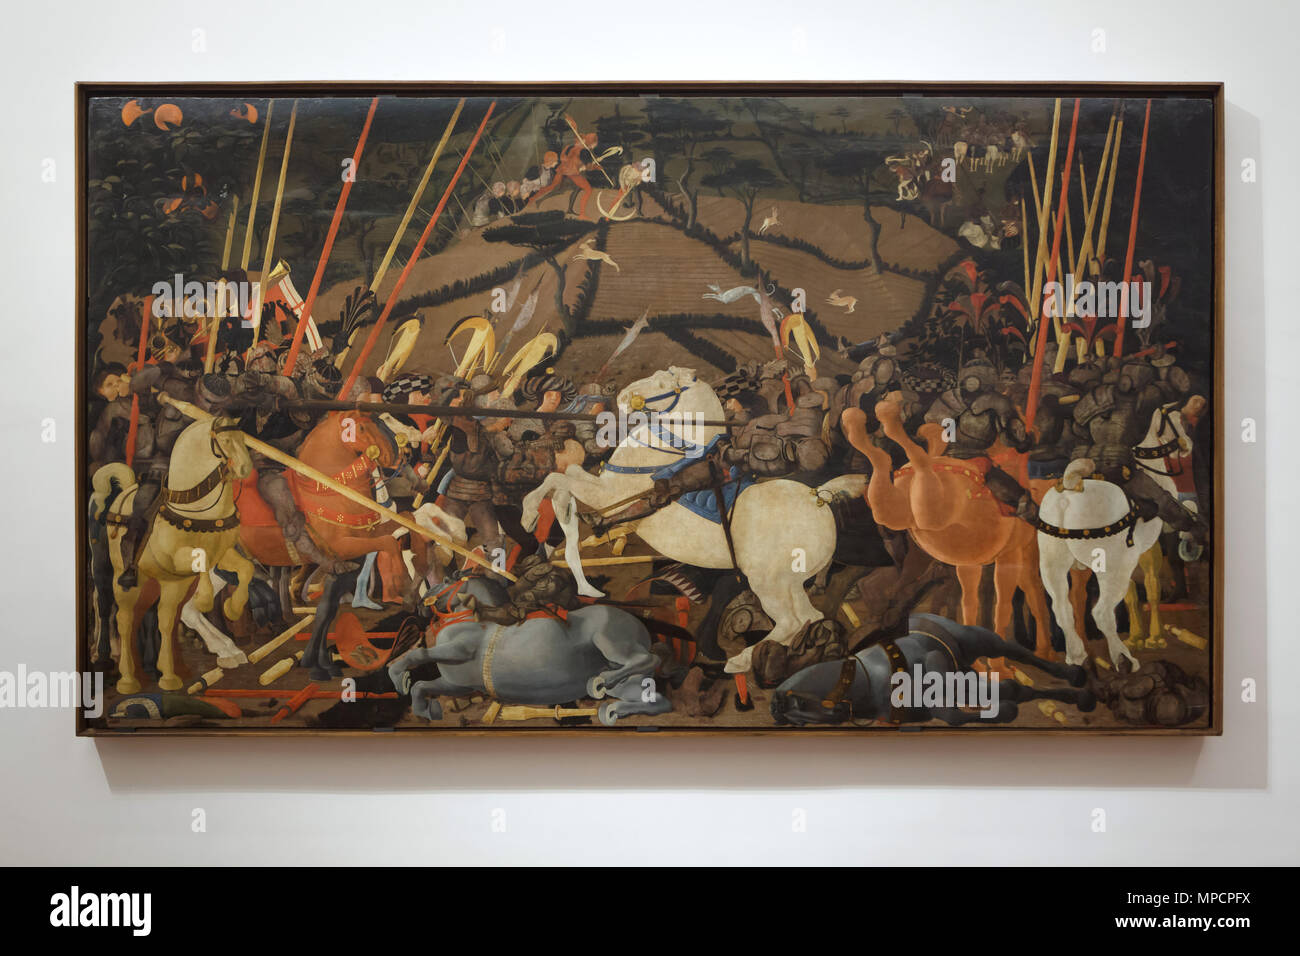 Gemälde "Die Schlacht von San Romano" (1435-1440) von der italienischen Renaissance Maler Paolo Uccello in den Uffizien (Galleria degli Uffizi) in Florenz, Toskana, Italien. Das Gemälde ist ein Teil eines Zyklus von drei Gemälde, die einen Sieg der Florentiner über die Siena San Romano in der Nähe von Pisa 1432. Stockfoto